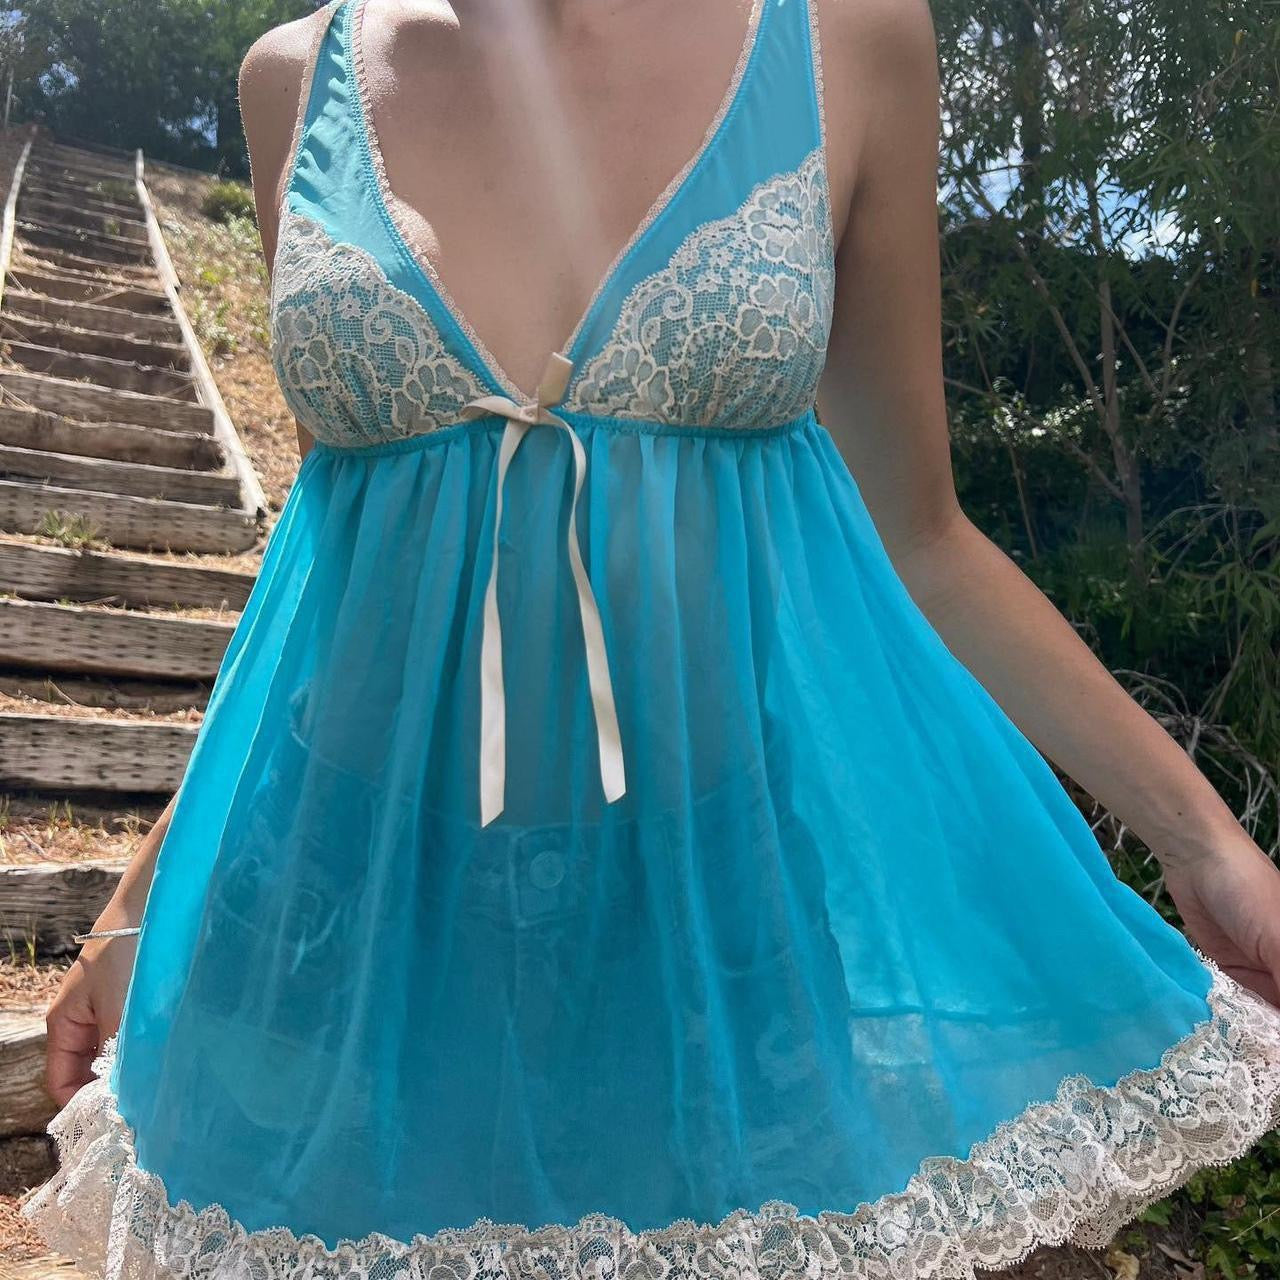 Vintage blue Victoria’s Secret dress